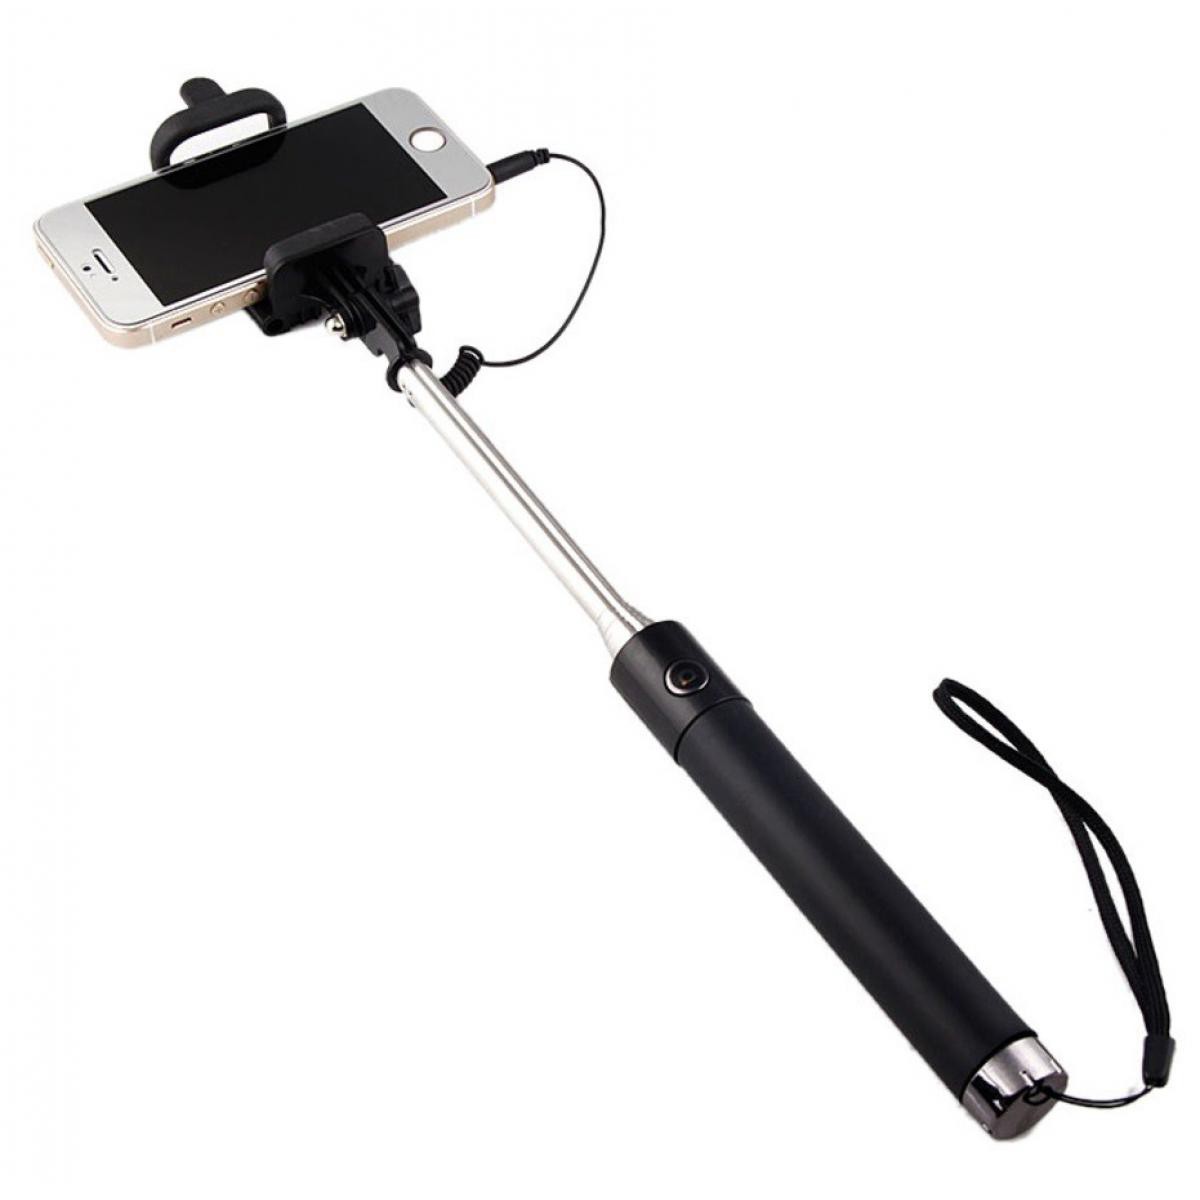 Shot - Perche Selfie Metal pour SAMSUNG Galaxy S10 Lite Smartphone avec Cable Jack Selfie Stick Android IOS Reglable Bouton Photo (NOIR) - Autres accessoires smartphone